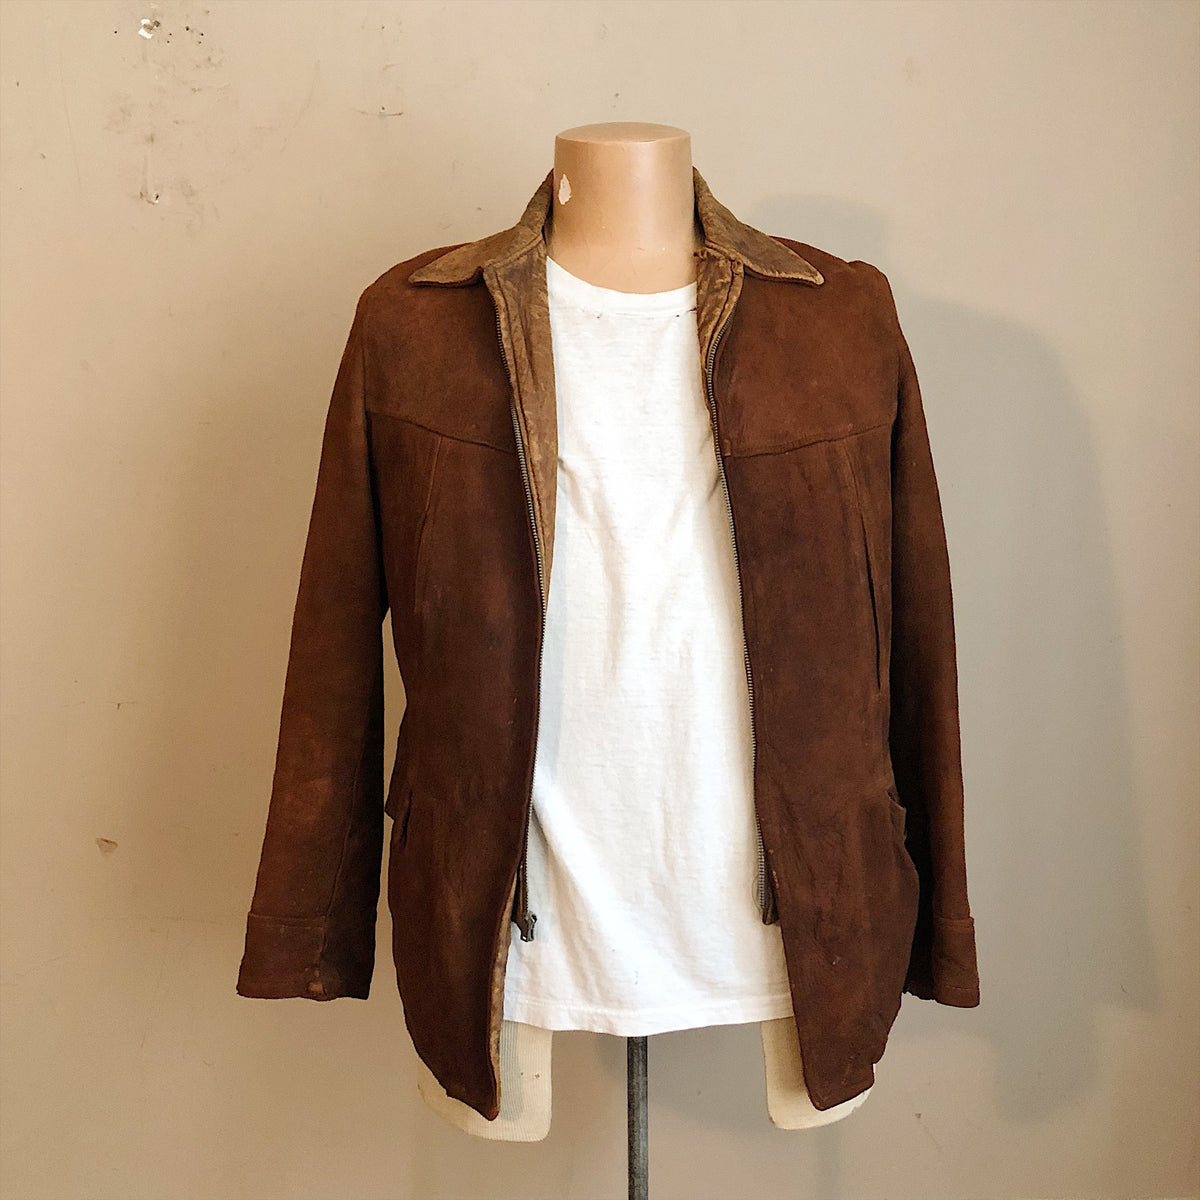 1930s Workwear Suede Leather Jacket Great Western Sportswear 40